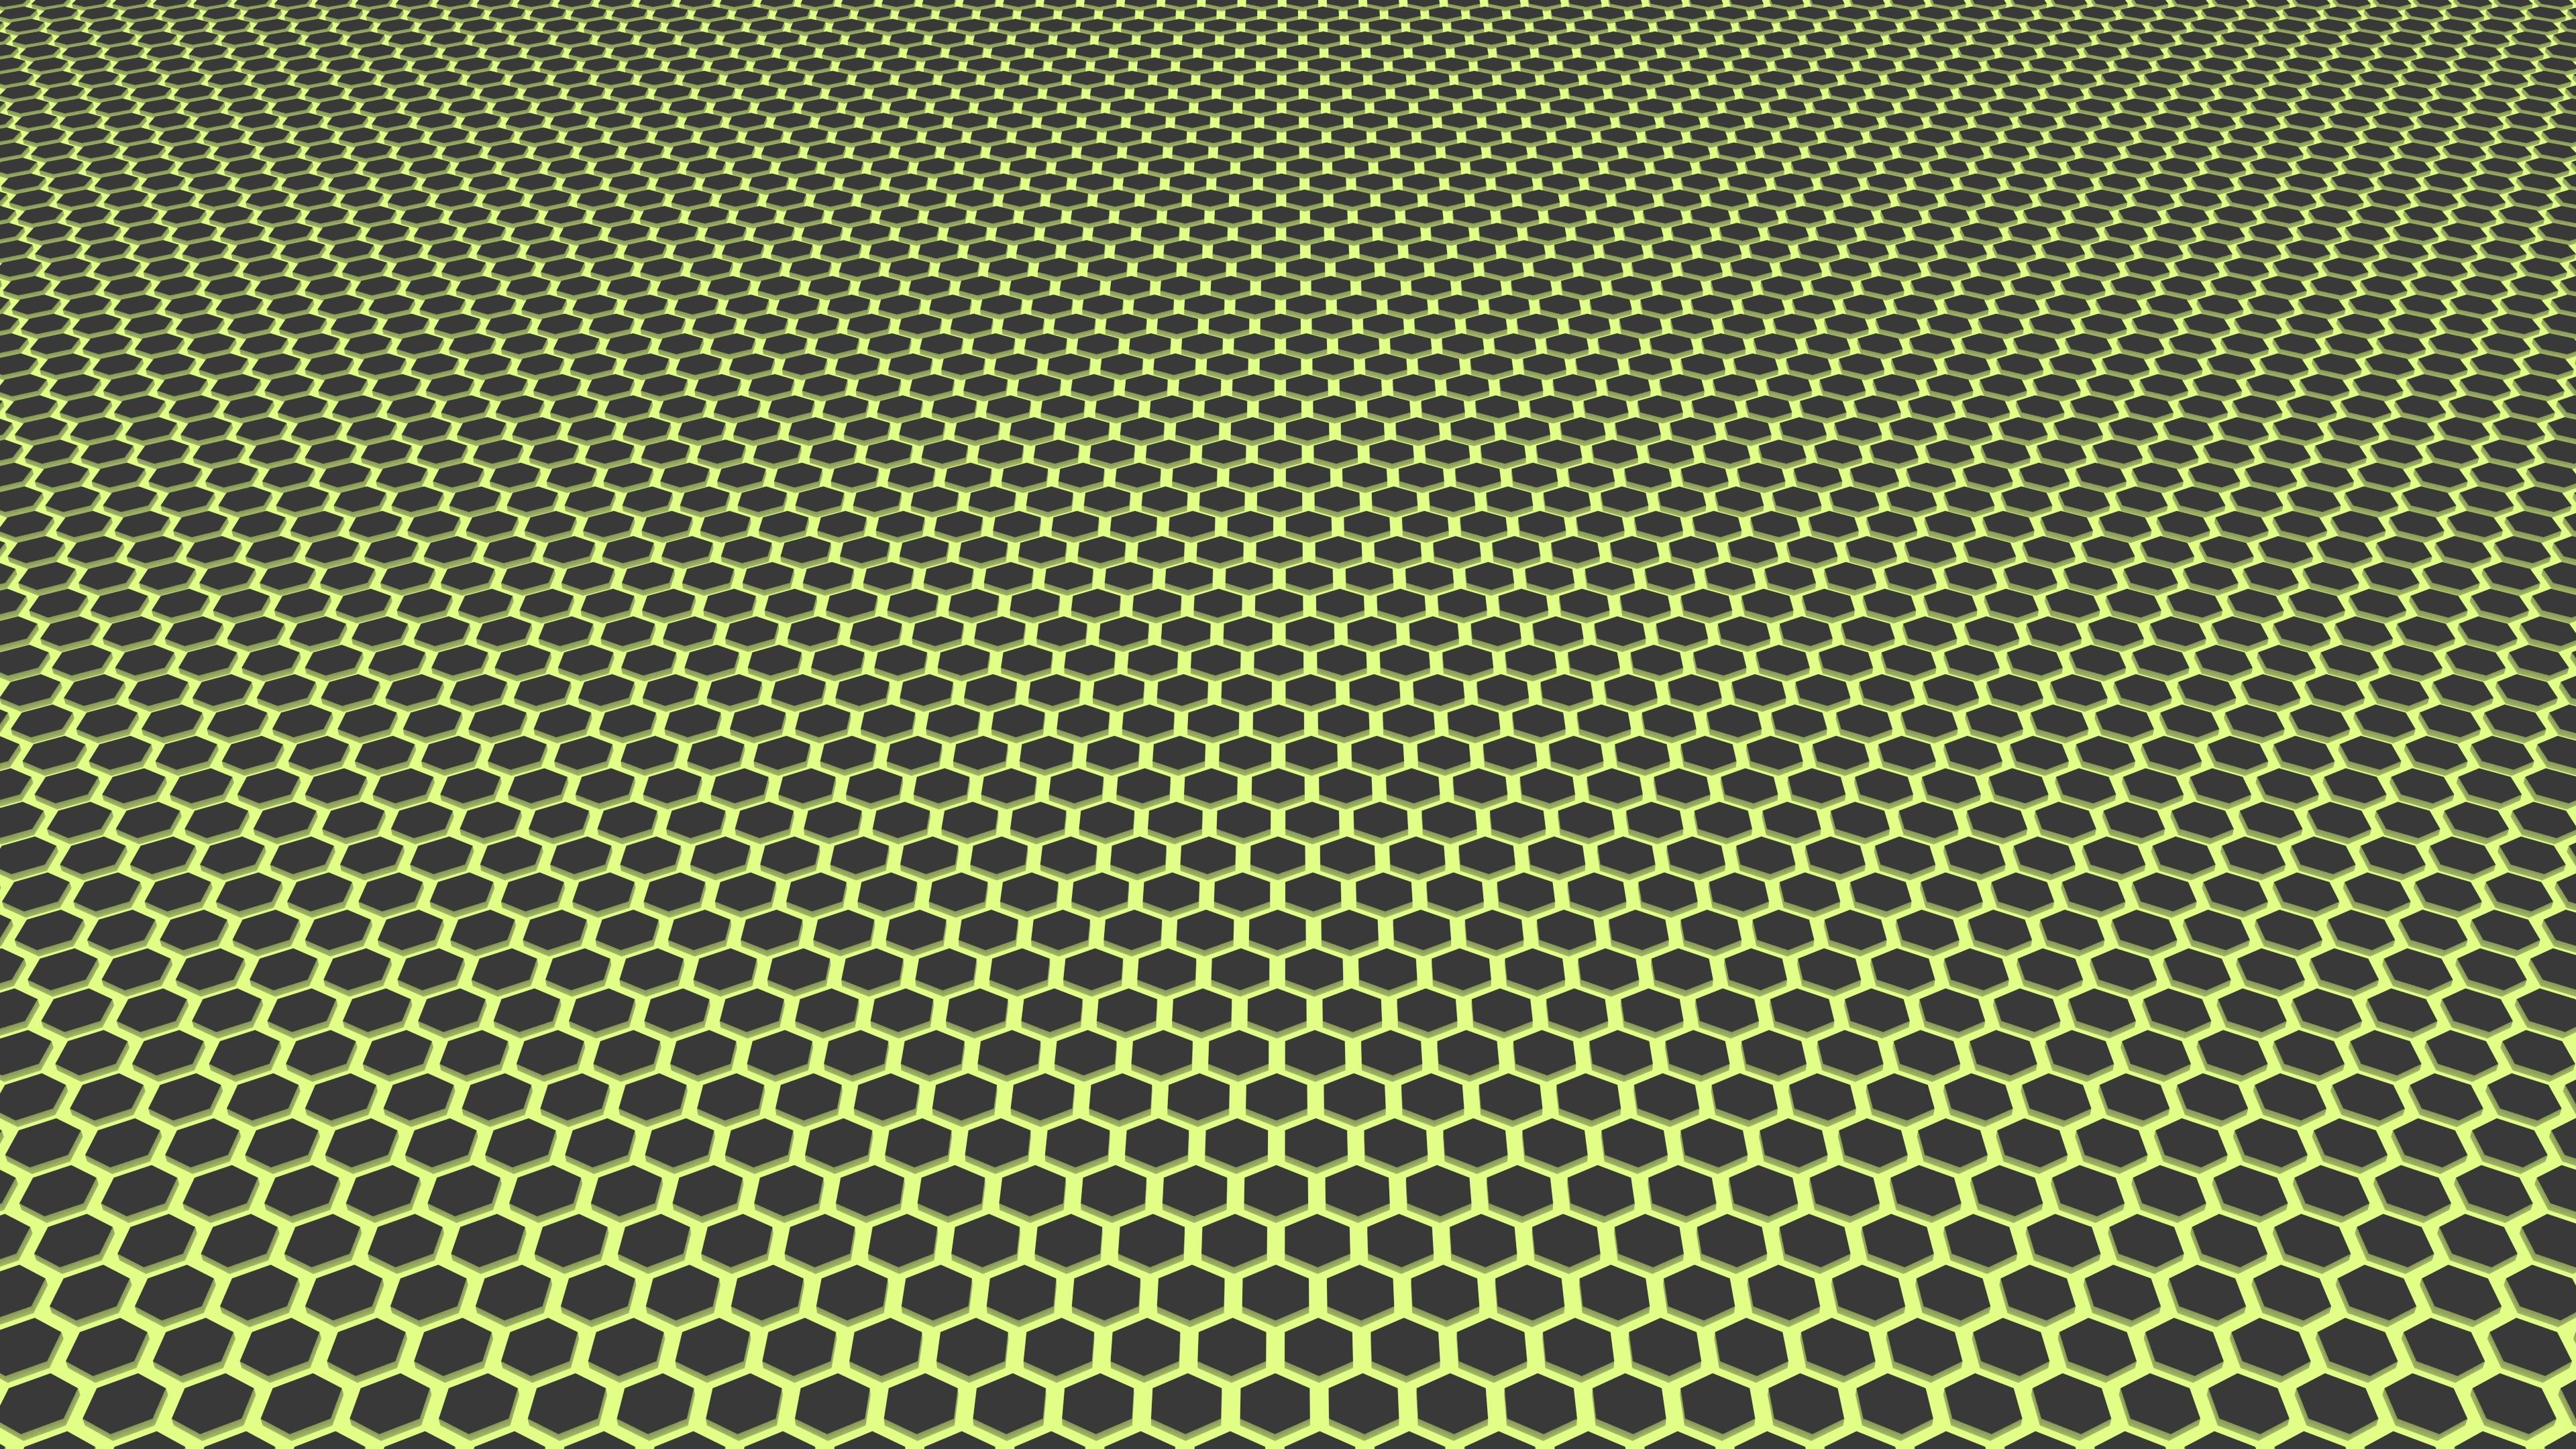 Hexagon pattern HD desktop wallpaper, Widescreen, High Definition